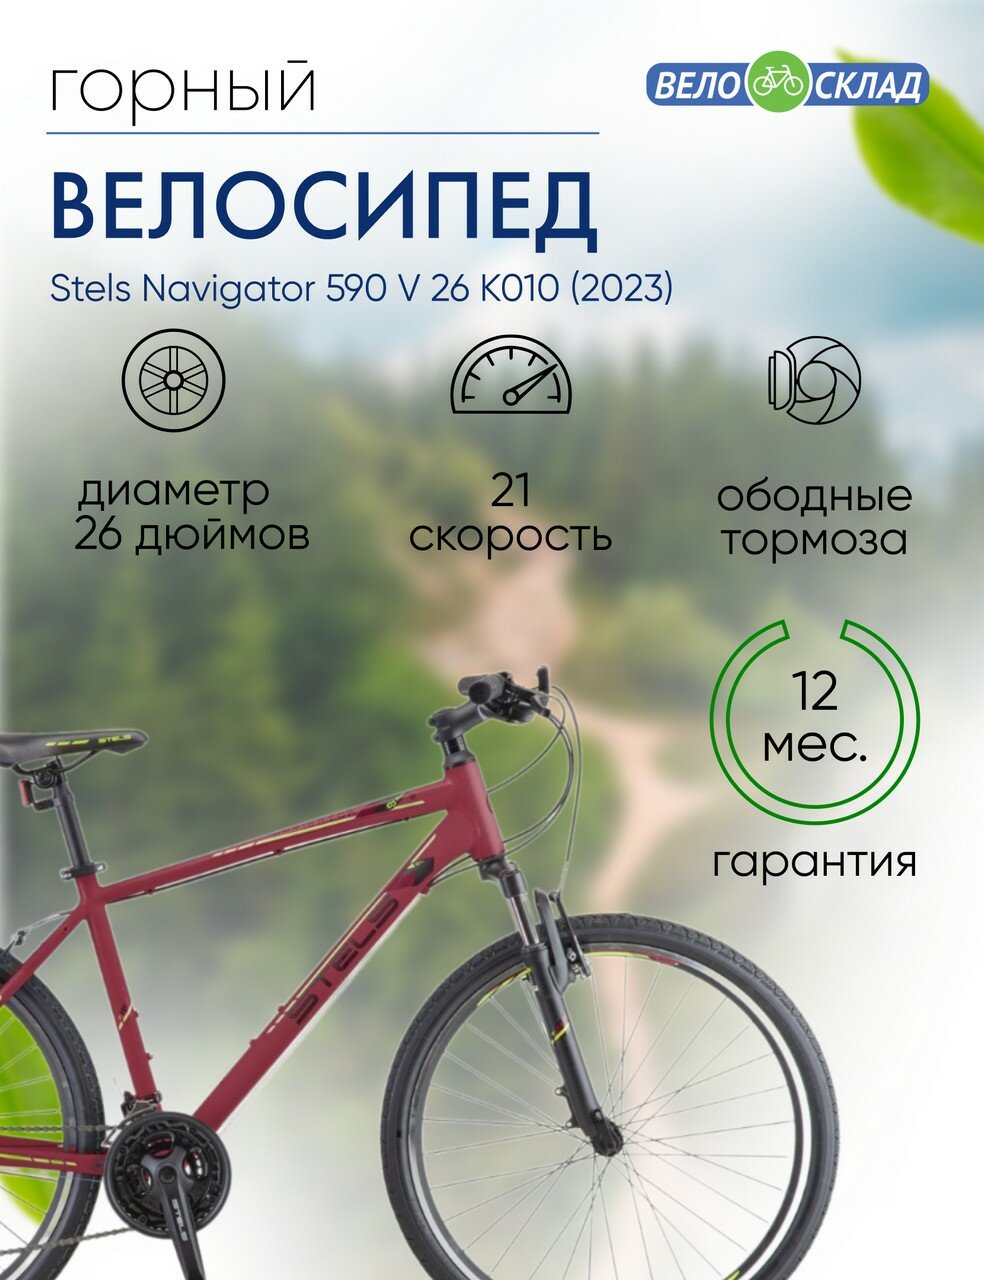 Горный велосипед Stels Navigator 590 V 26 K010, год 2023, цвет Красный-Зеленый, ростовка 16